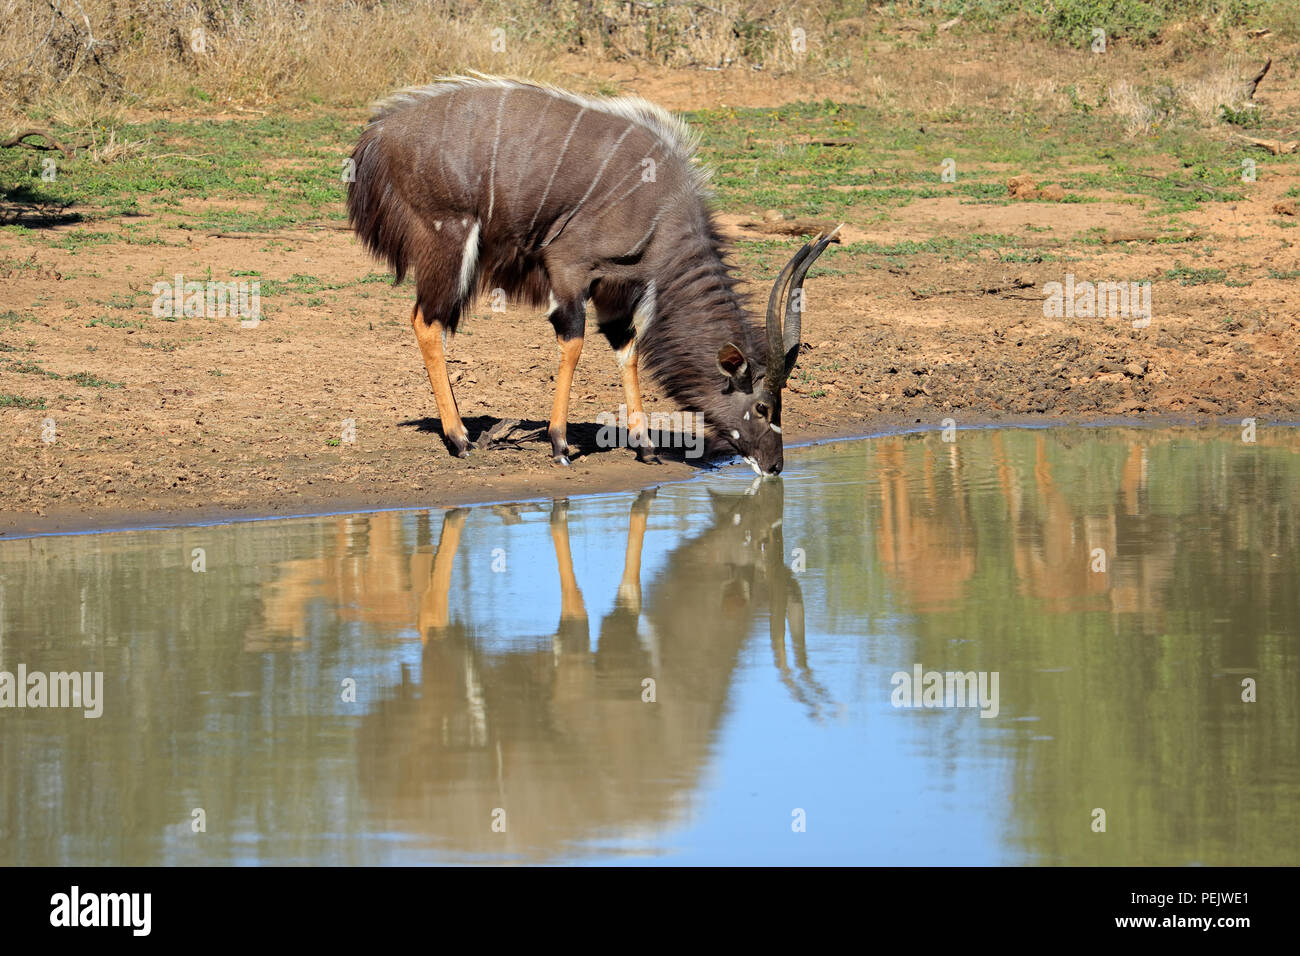 Male Nyala antelope (Tragelaphus angasii) drinking water, Mkuze game reserve, South Africa Stock Photo